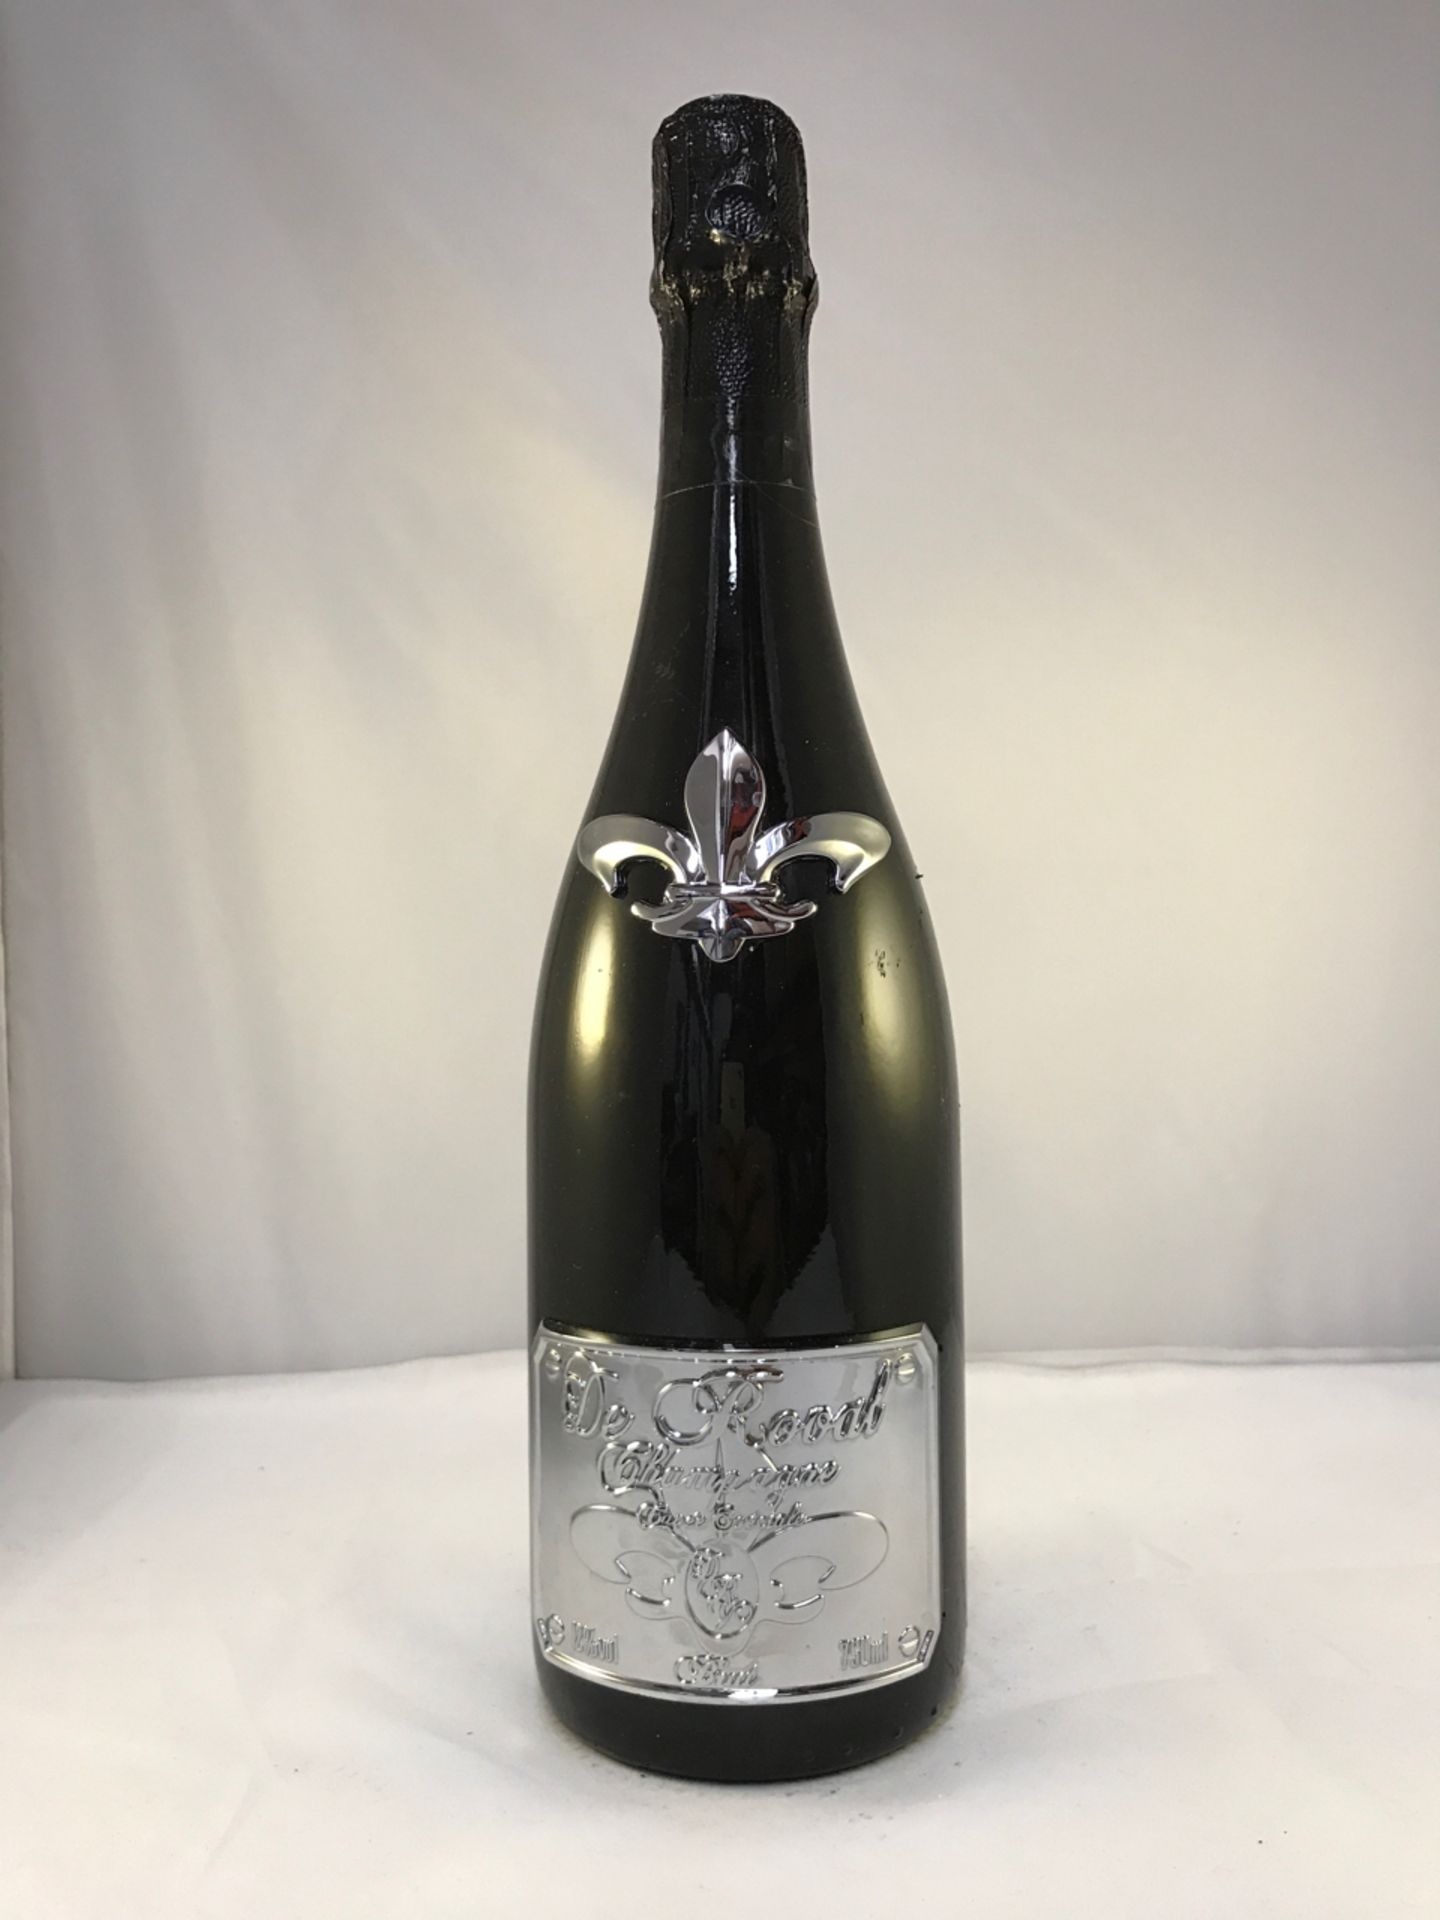 De Roval Champagne Cuvee Speciale Brut 2009 Platinum 750ml Bottle